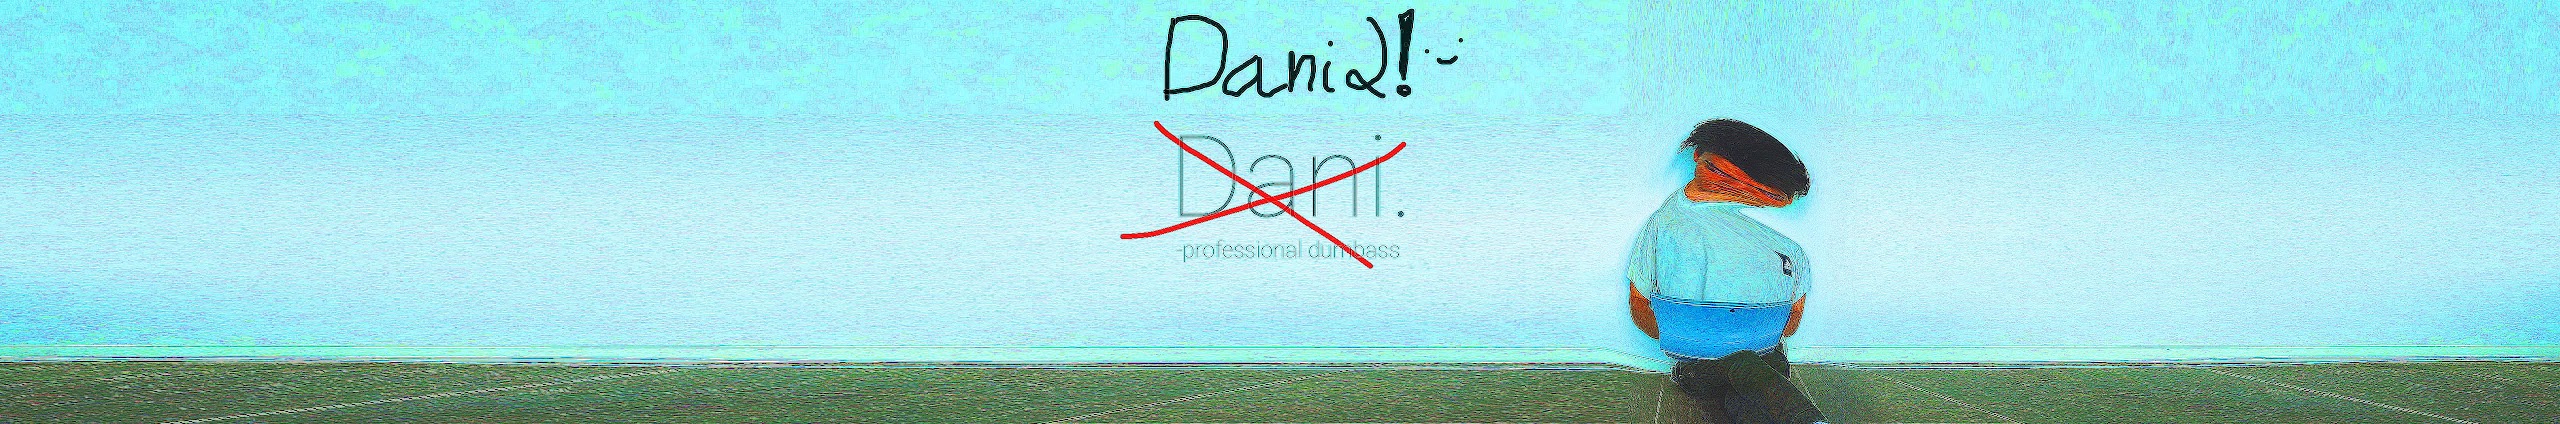 Dani2